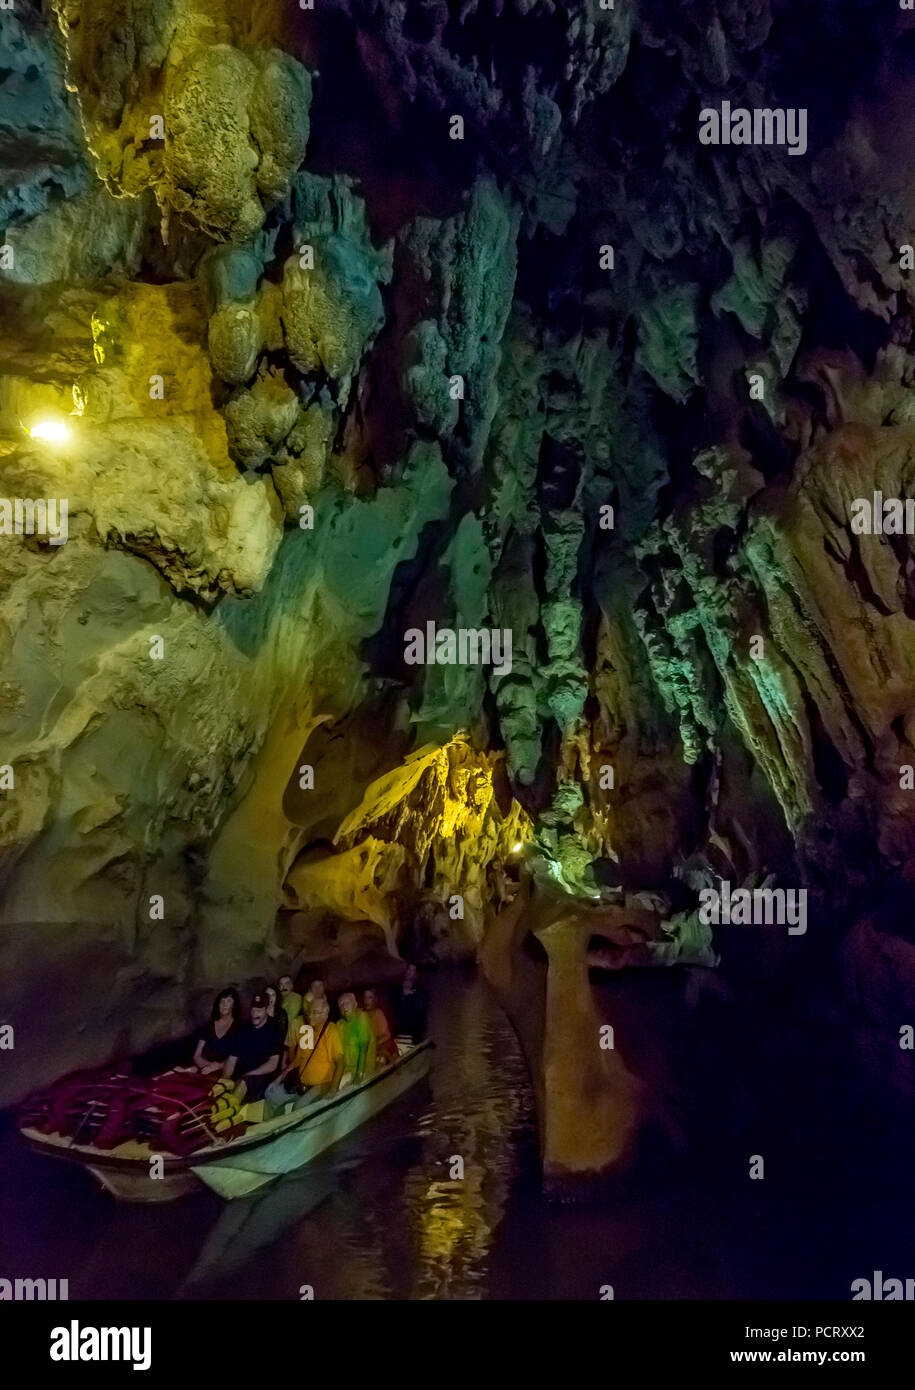 Los turistas en un barco en los ríos subterráneos en las cuevas de los indios, la Cueva del Indio, cuevas subterráneas con un curso de agua accesible a los turistas, Viñales, Cuba, Centroamérica, Cuba, El Caribe Foto de stock